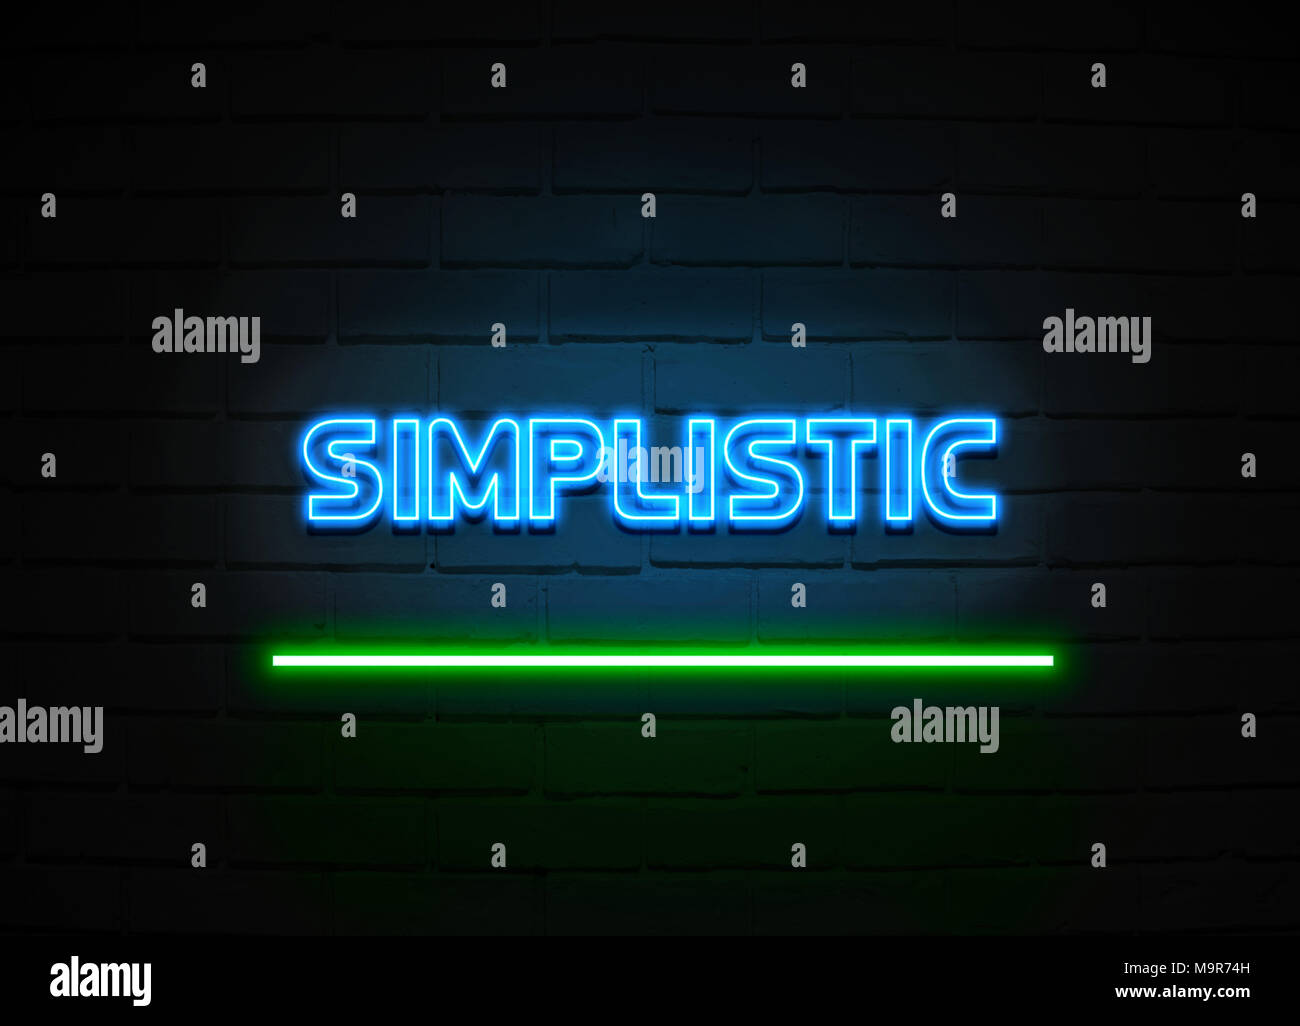 Vereinfachende Leuchtreklame - glühende Leuchtreklame auf brickwall Wand - 3D-Royalty Free Stock Illustration dargestellt. Stockfoto